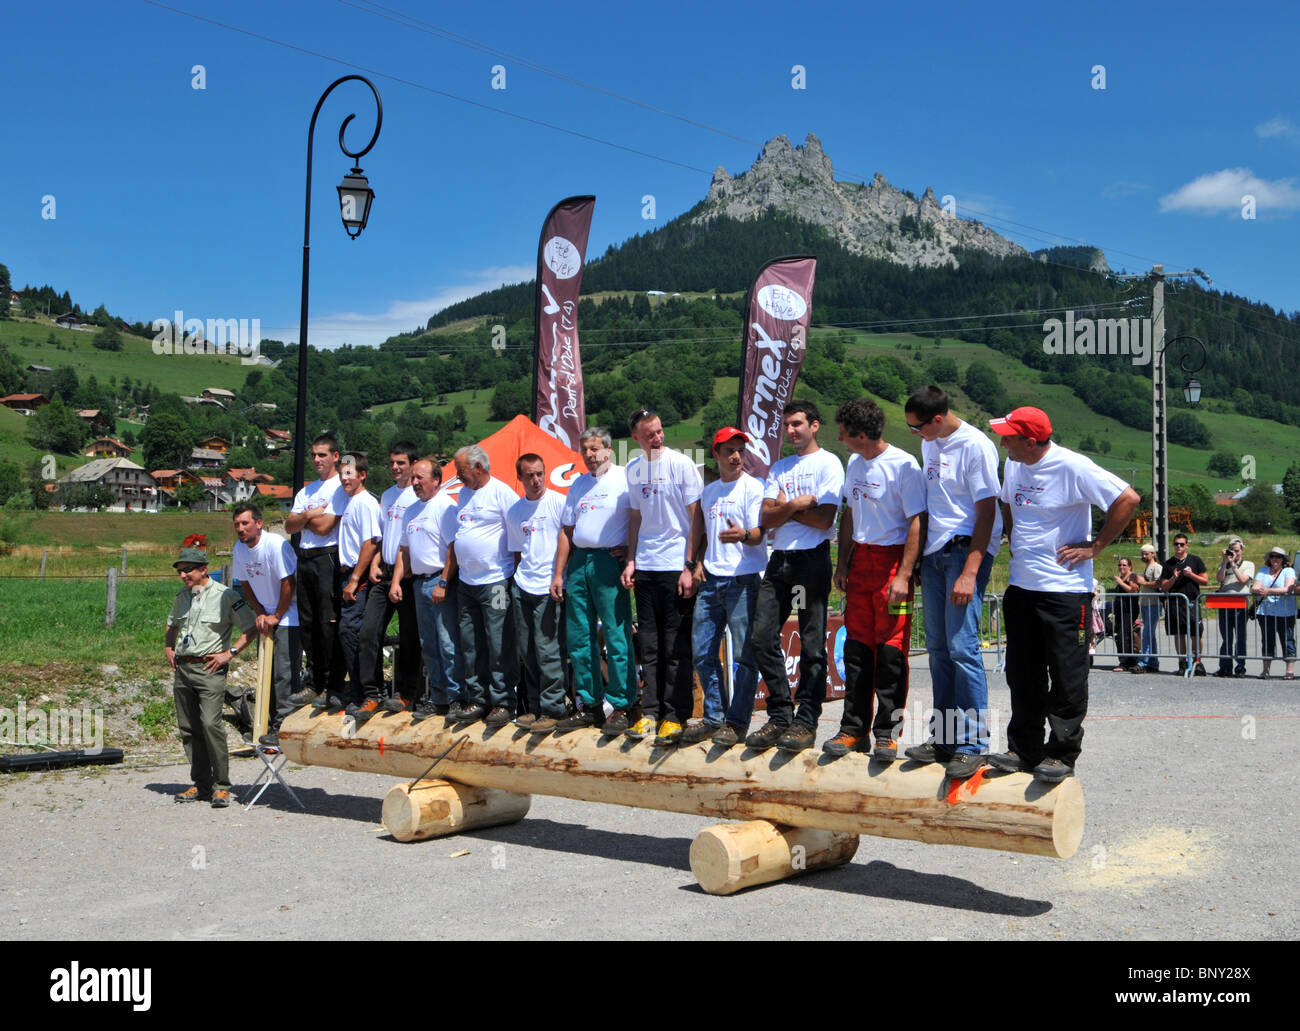 Holz hacken Wettbewerb, Männer, Line-up Konkurrenten vor einem Holz hacken Wettbewerb in Bernex, Frankreich Stockfoto